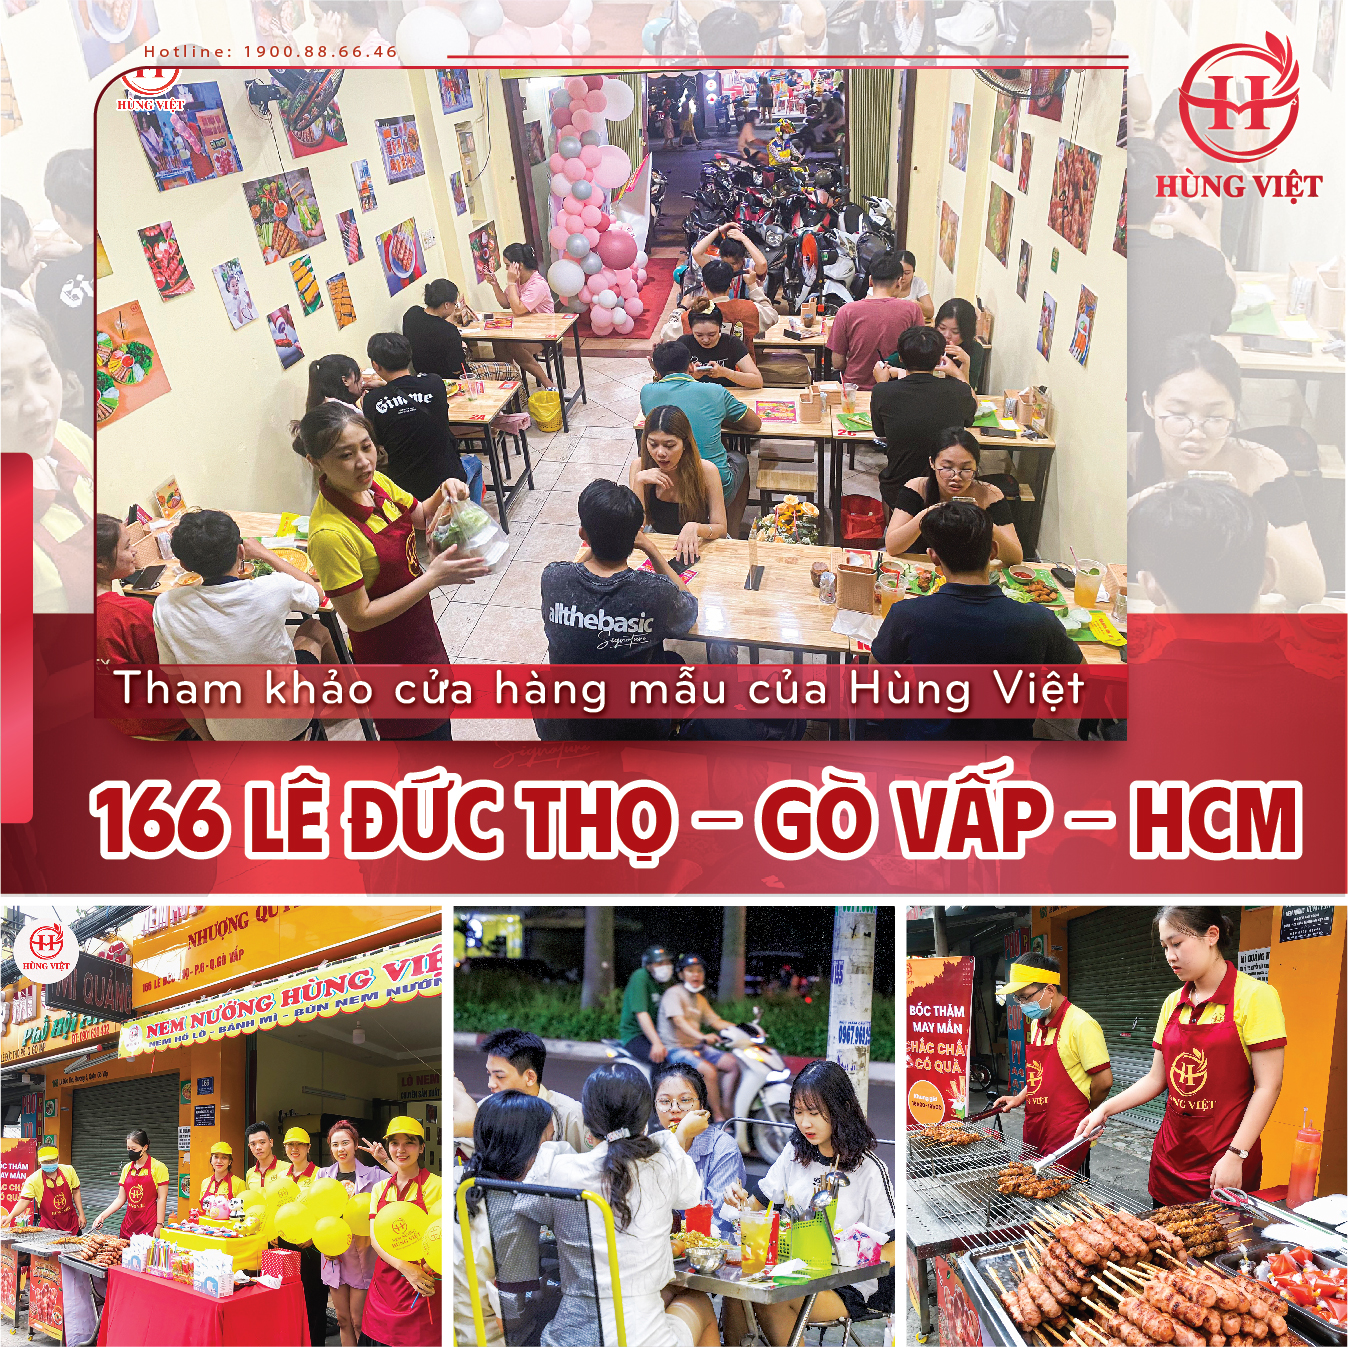 Tham khảo cửa hàng mẫu của Hùng Việt cơ sở 166 Lê Đức Thọ